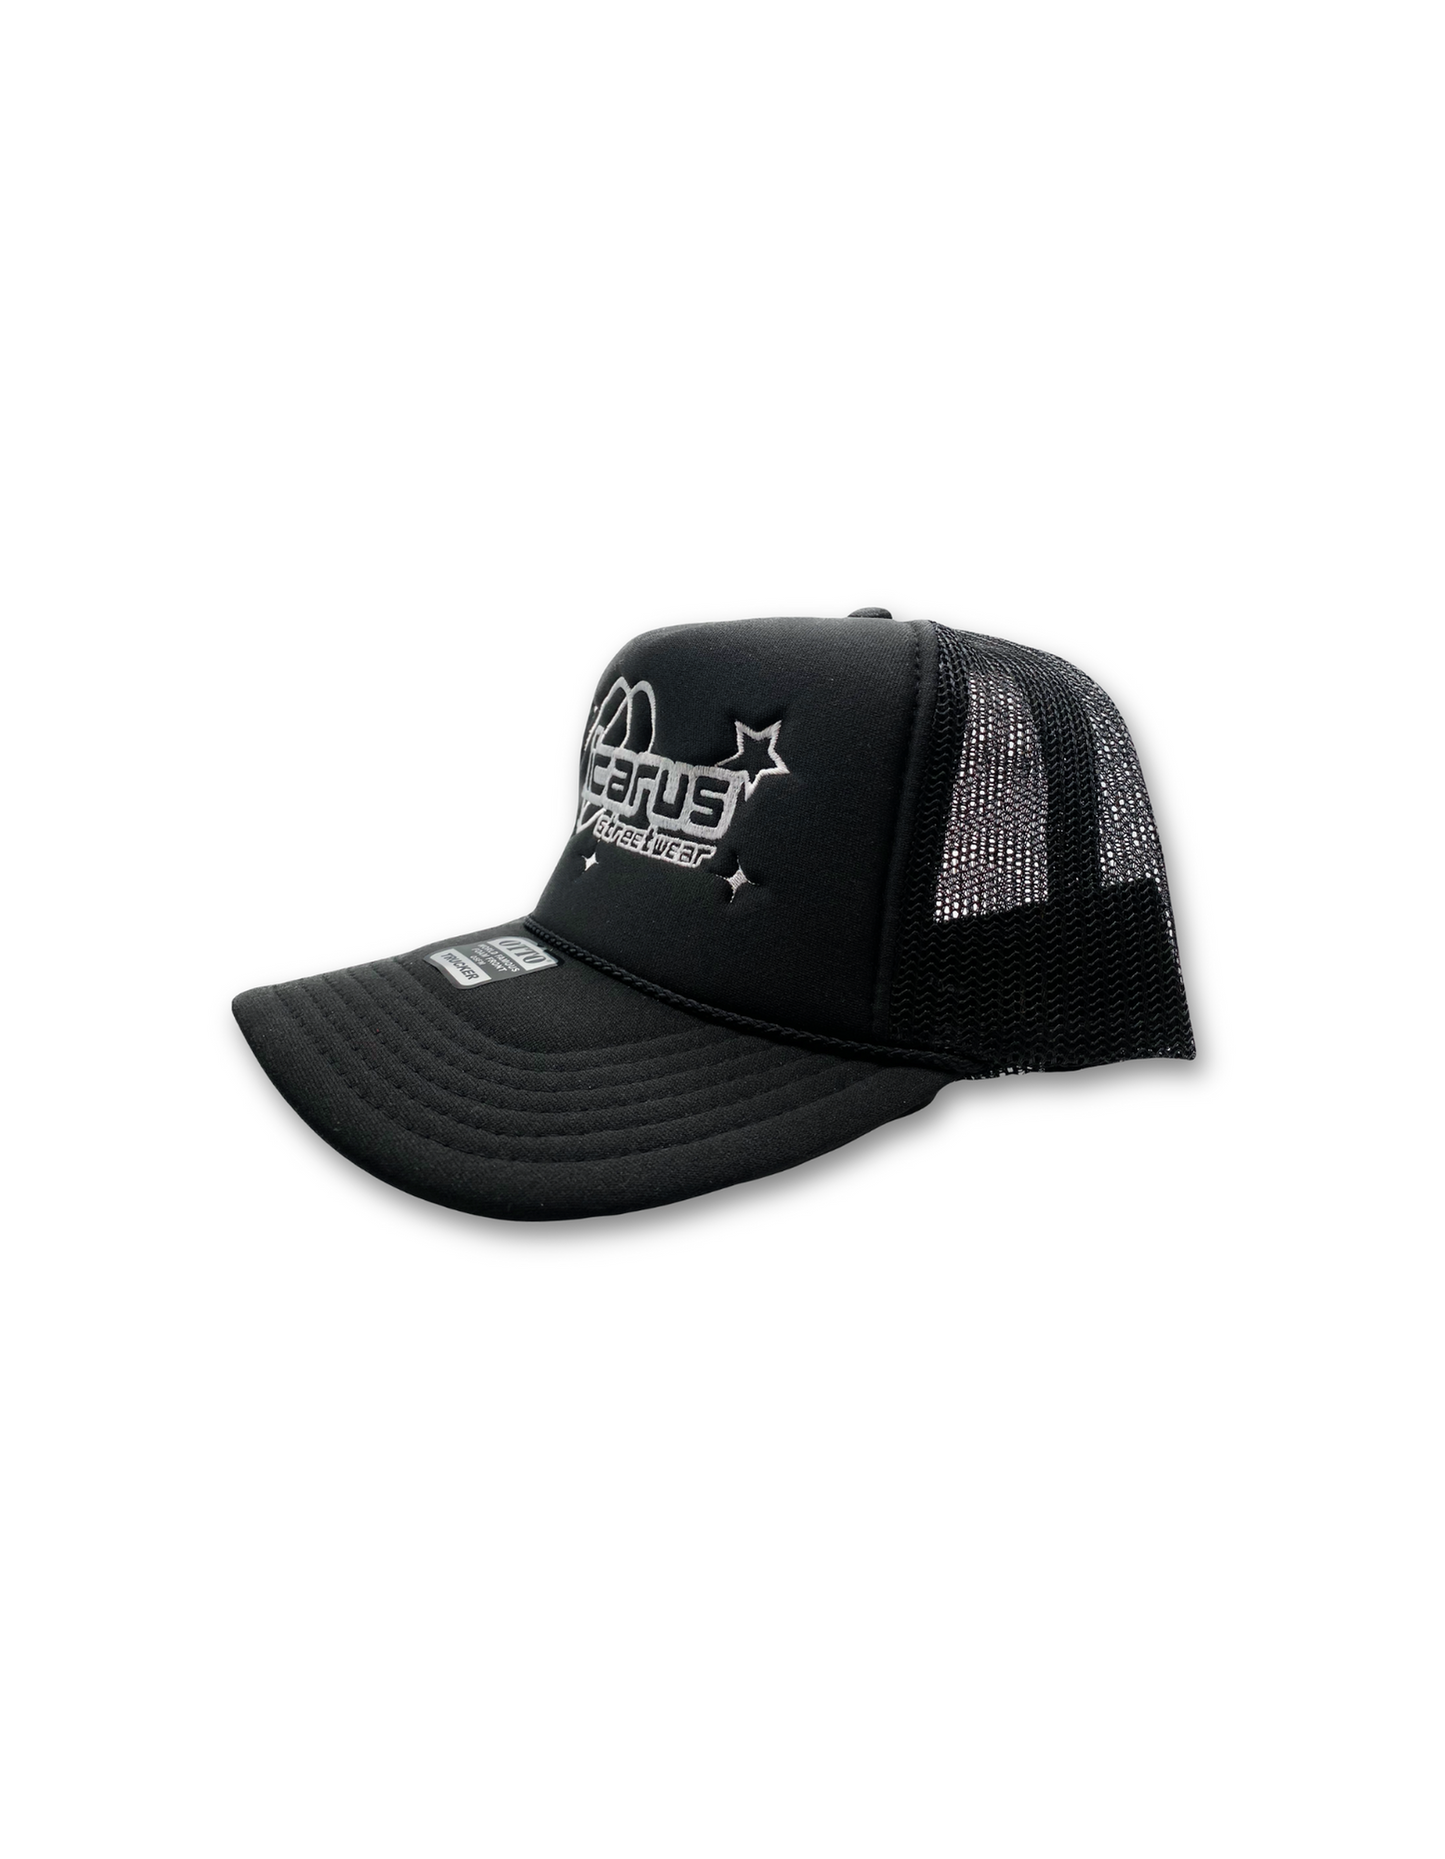 Icarus Streetwear Black Trucker Hat